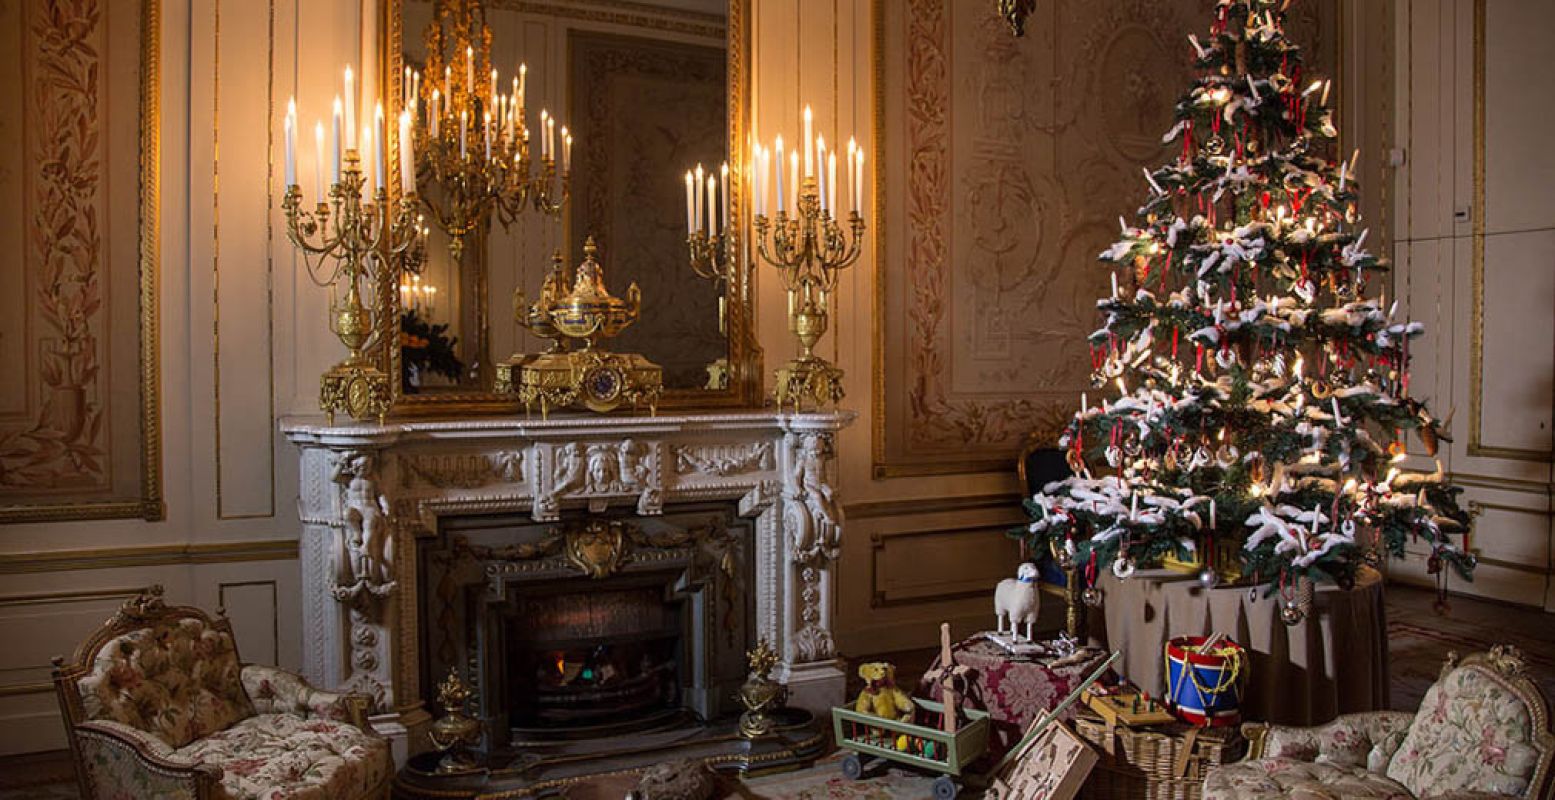 In de balzaal staan de kerstboom en de cadeautjes al klaar. Foto: Museum Willet-Holthuysen © Richard Lotte.